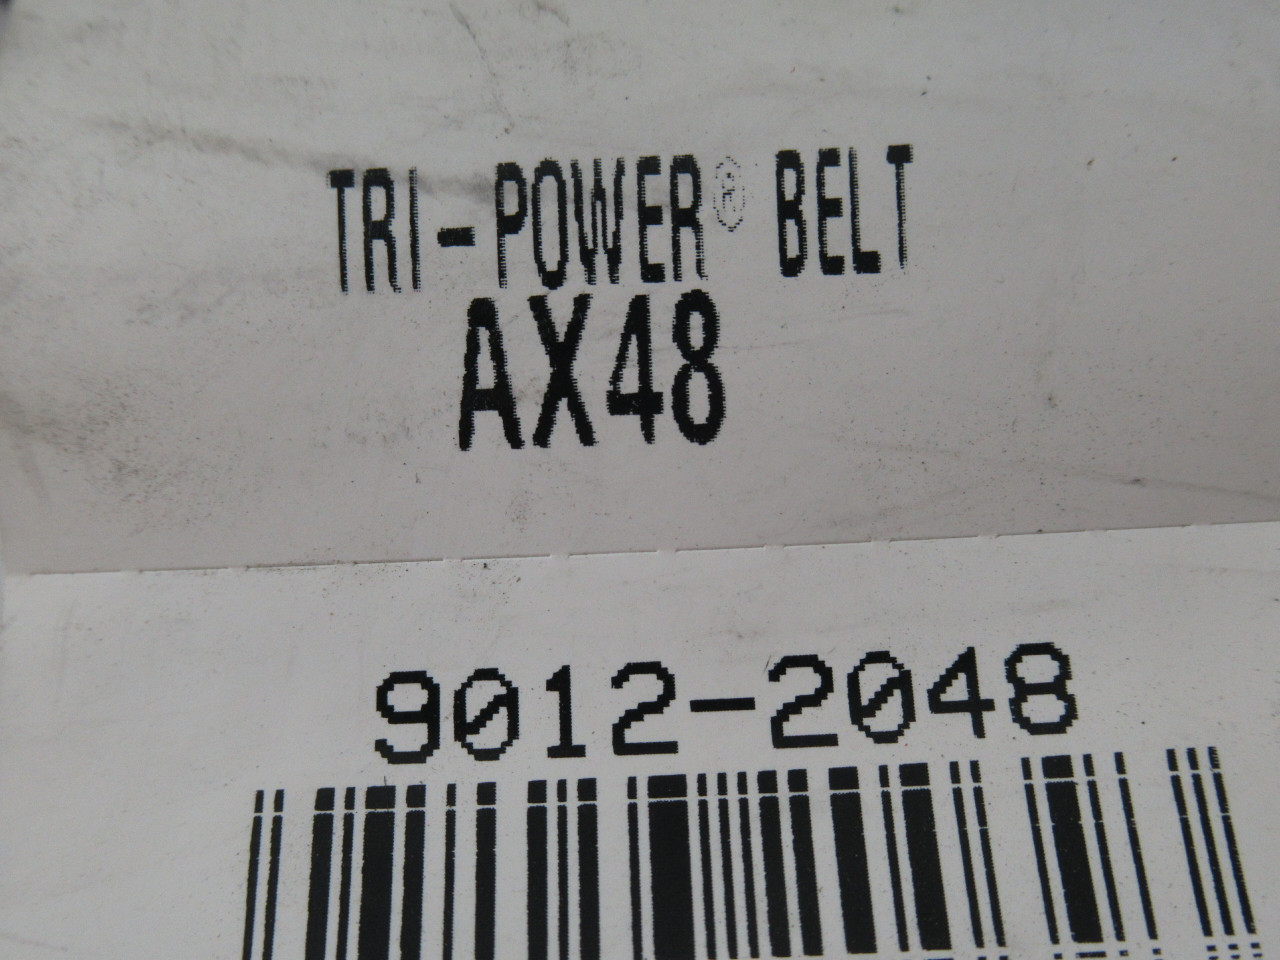 Gates AX48 9012-2048 Tri-Power Heavy Duty V-Belt 50.10"L .48"W .35"T ! NEW !